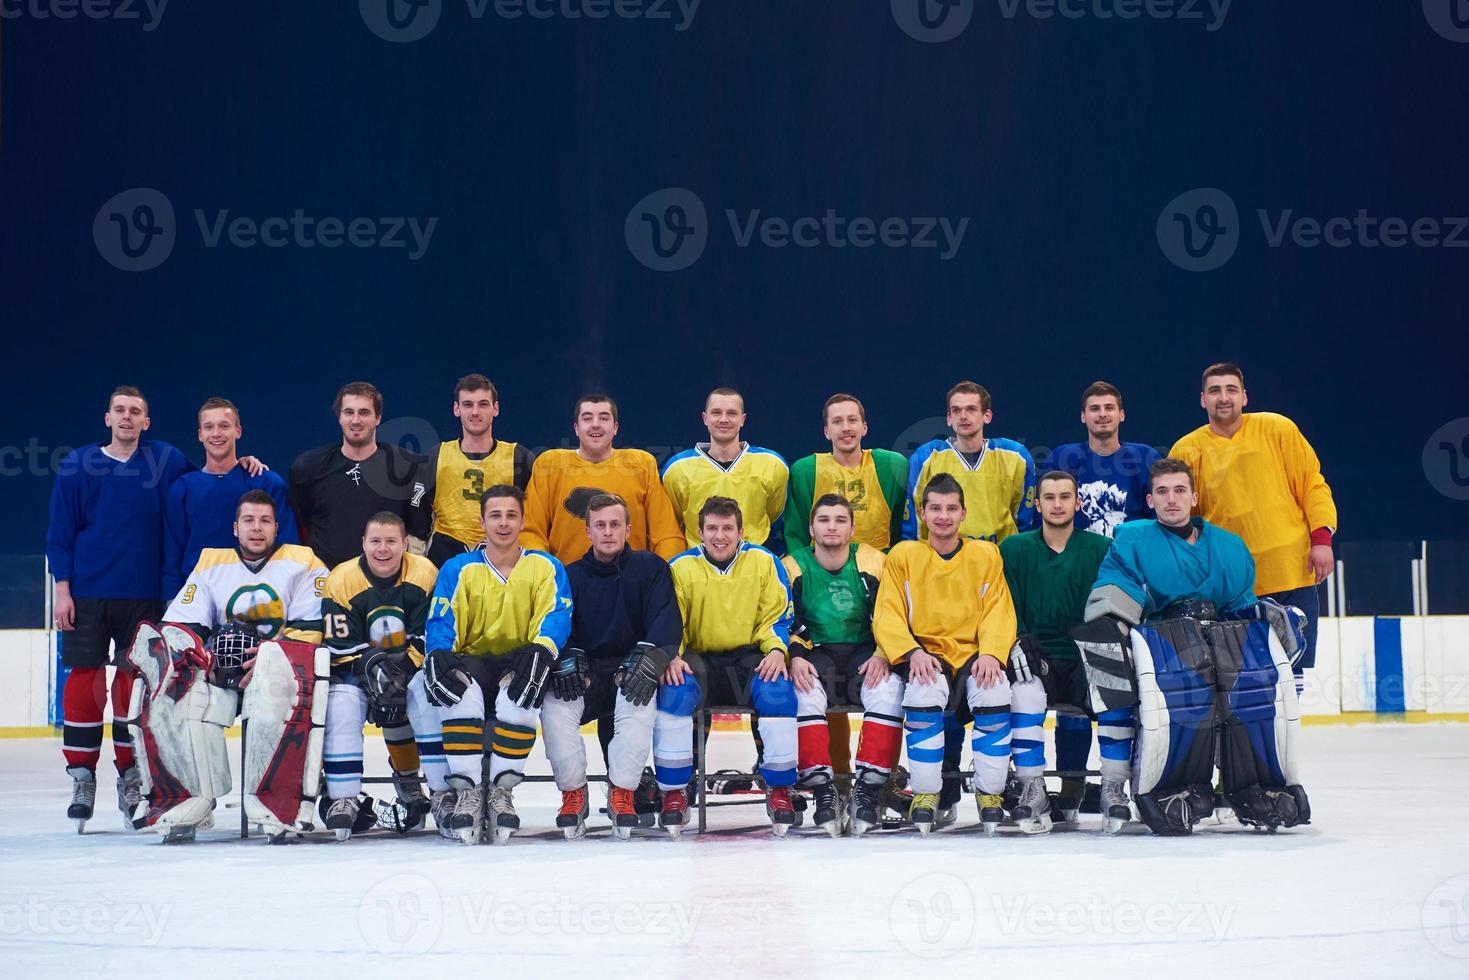 retrato de equipe de jogadores de hóquei no gelo foto